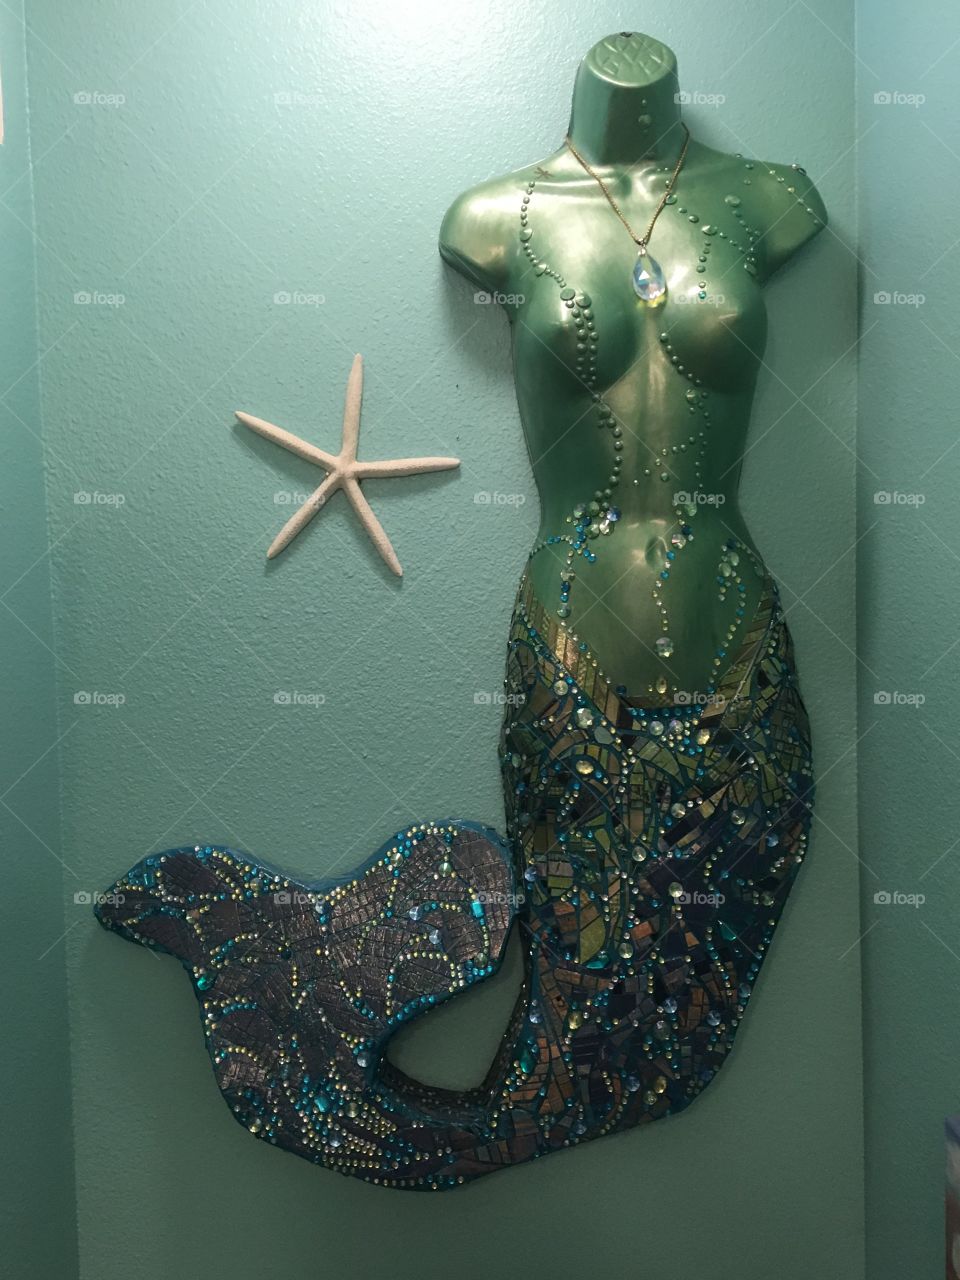 Mermaid tile